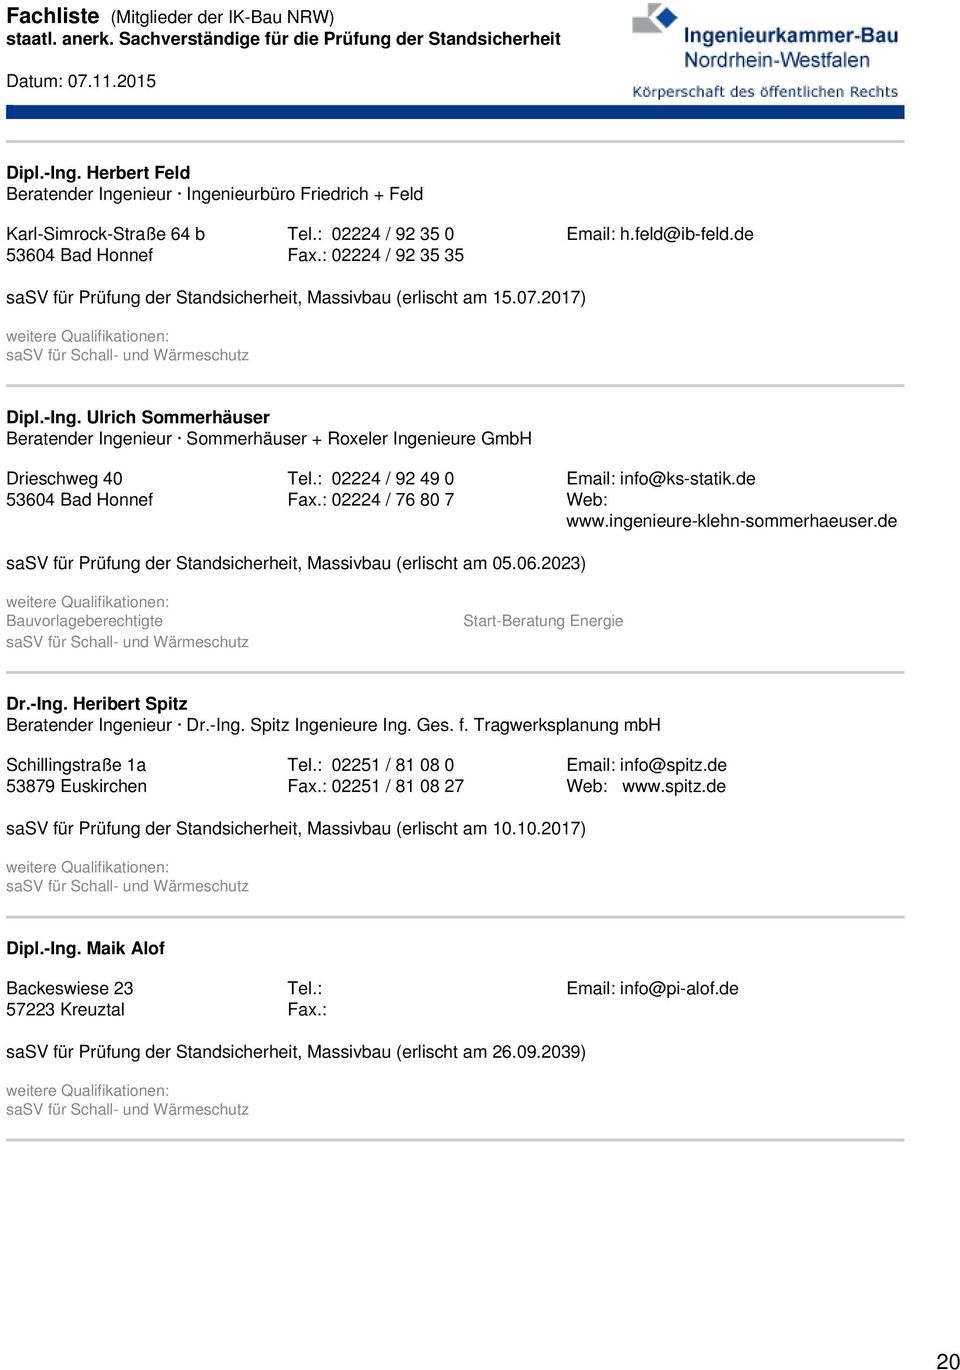 Ulrich Sommerhäuser Beratender Ingenieur Sommerhäuser + Roxeler Ingenieure GmbH Drieschweg 40 53604 Bad Honnef Tel.: 02224 / 92 49 0 Fax.: 02224 / 76 80 7 Email: info@ks-statik.de Web: www.